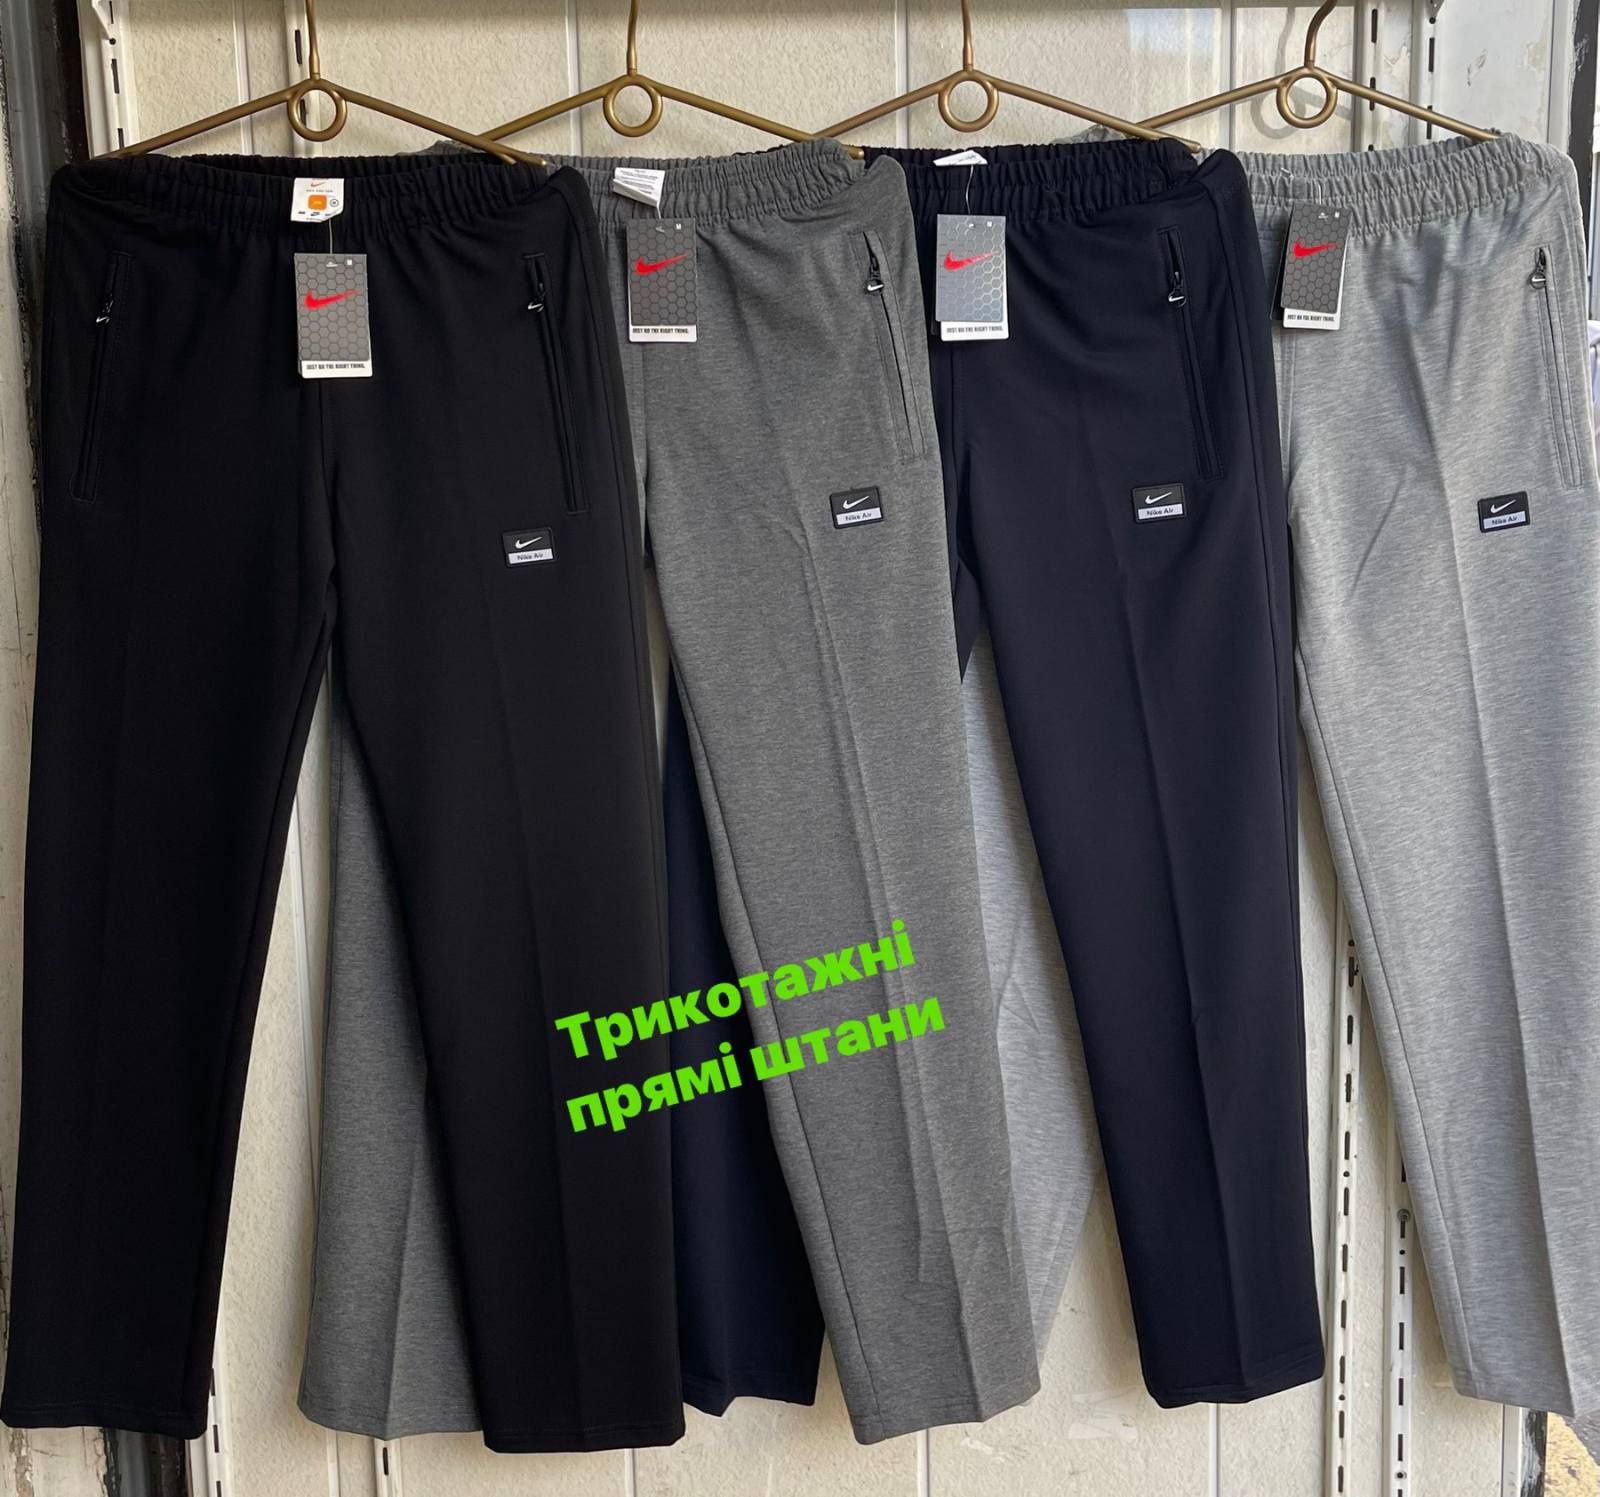 Мужские спортивные штаны Fore/Nike/Adidas в расцветках Норма/Батал